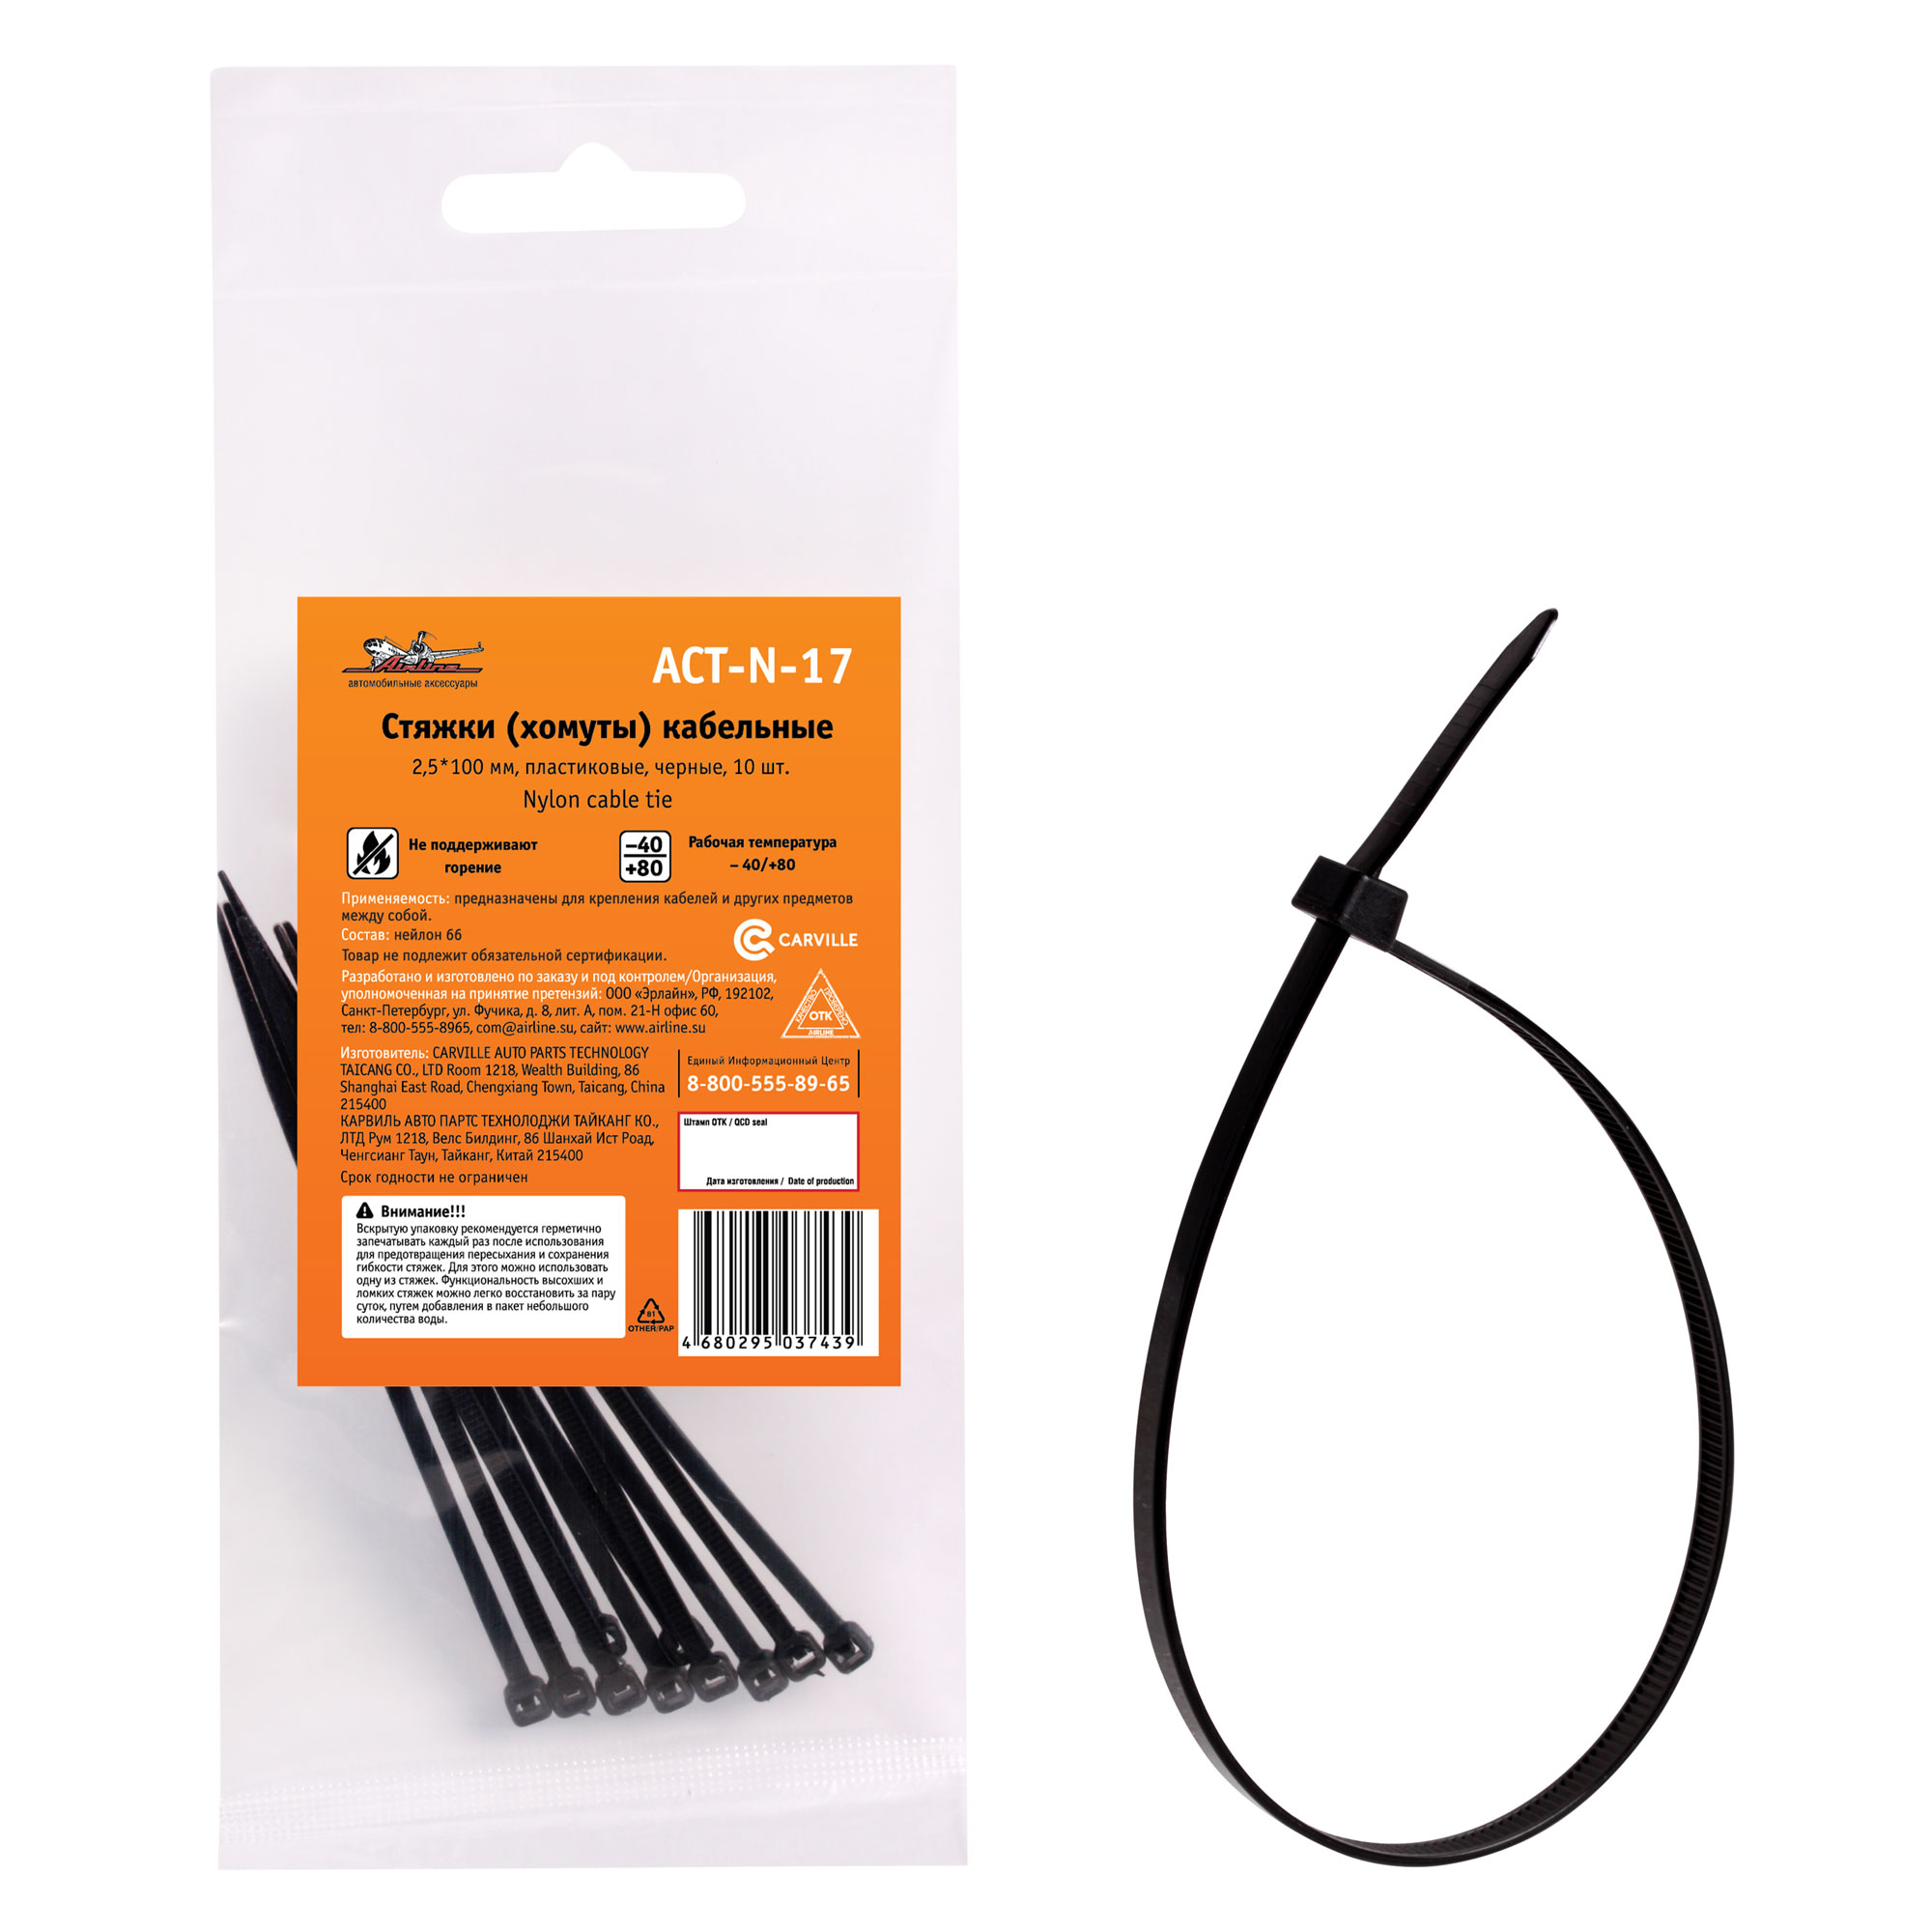 Стяжки (хомуты) кабельные 2,5*100 мм, пластиковые, черные, 10 шт. - AIRLINE ACT-N-17